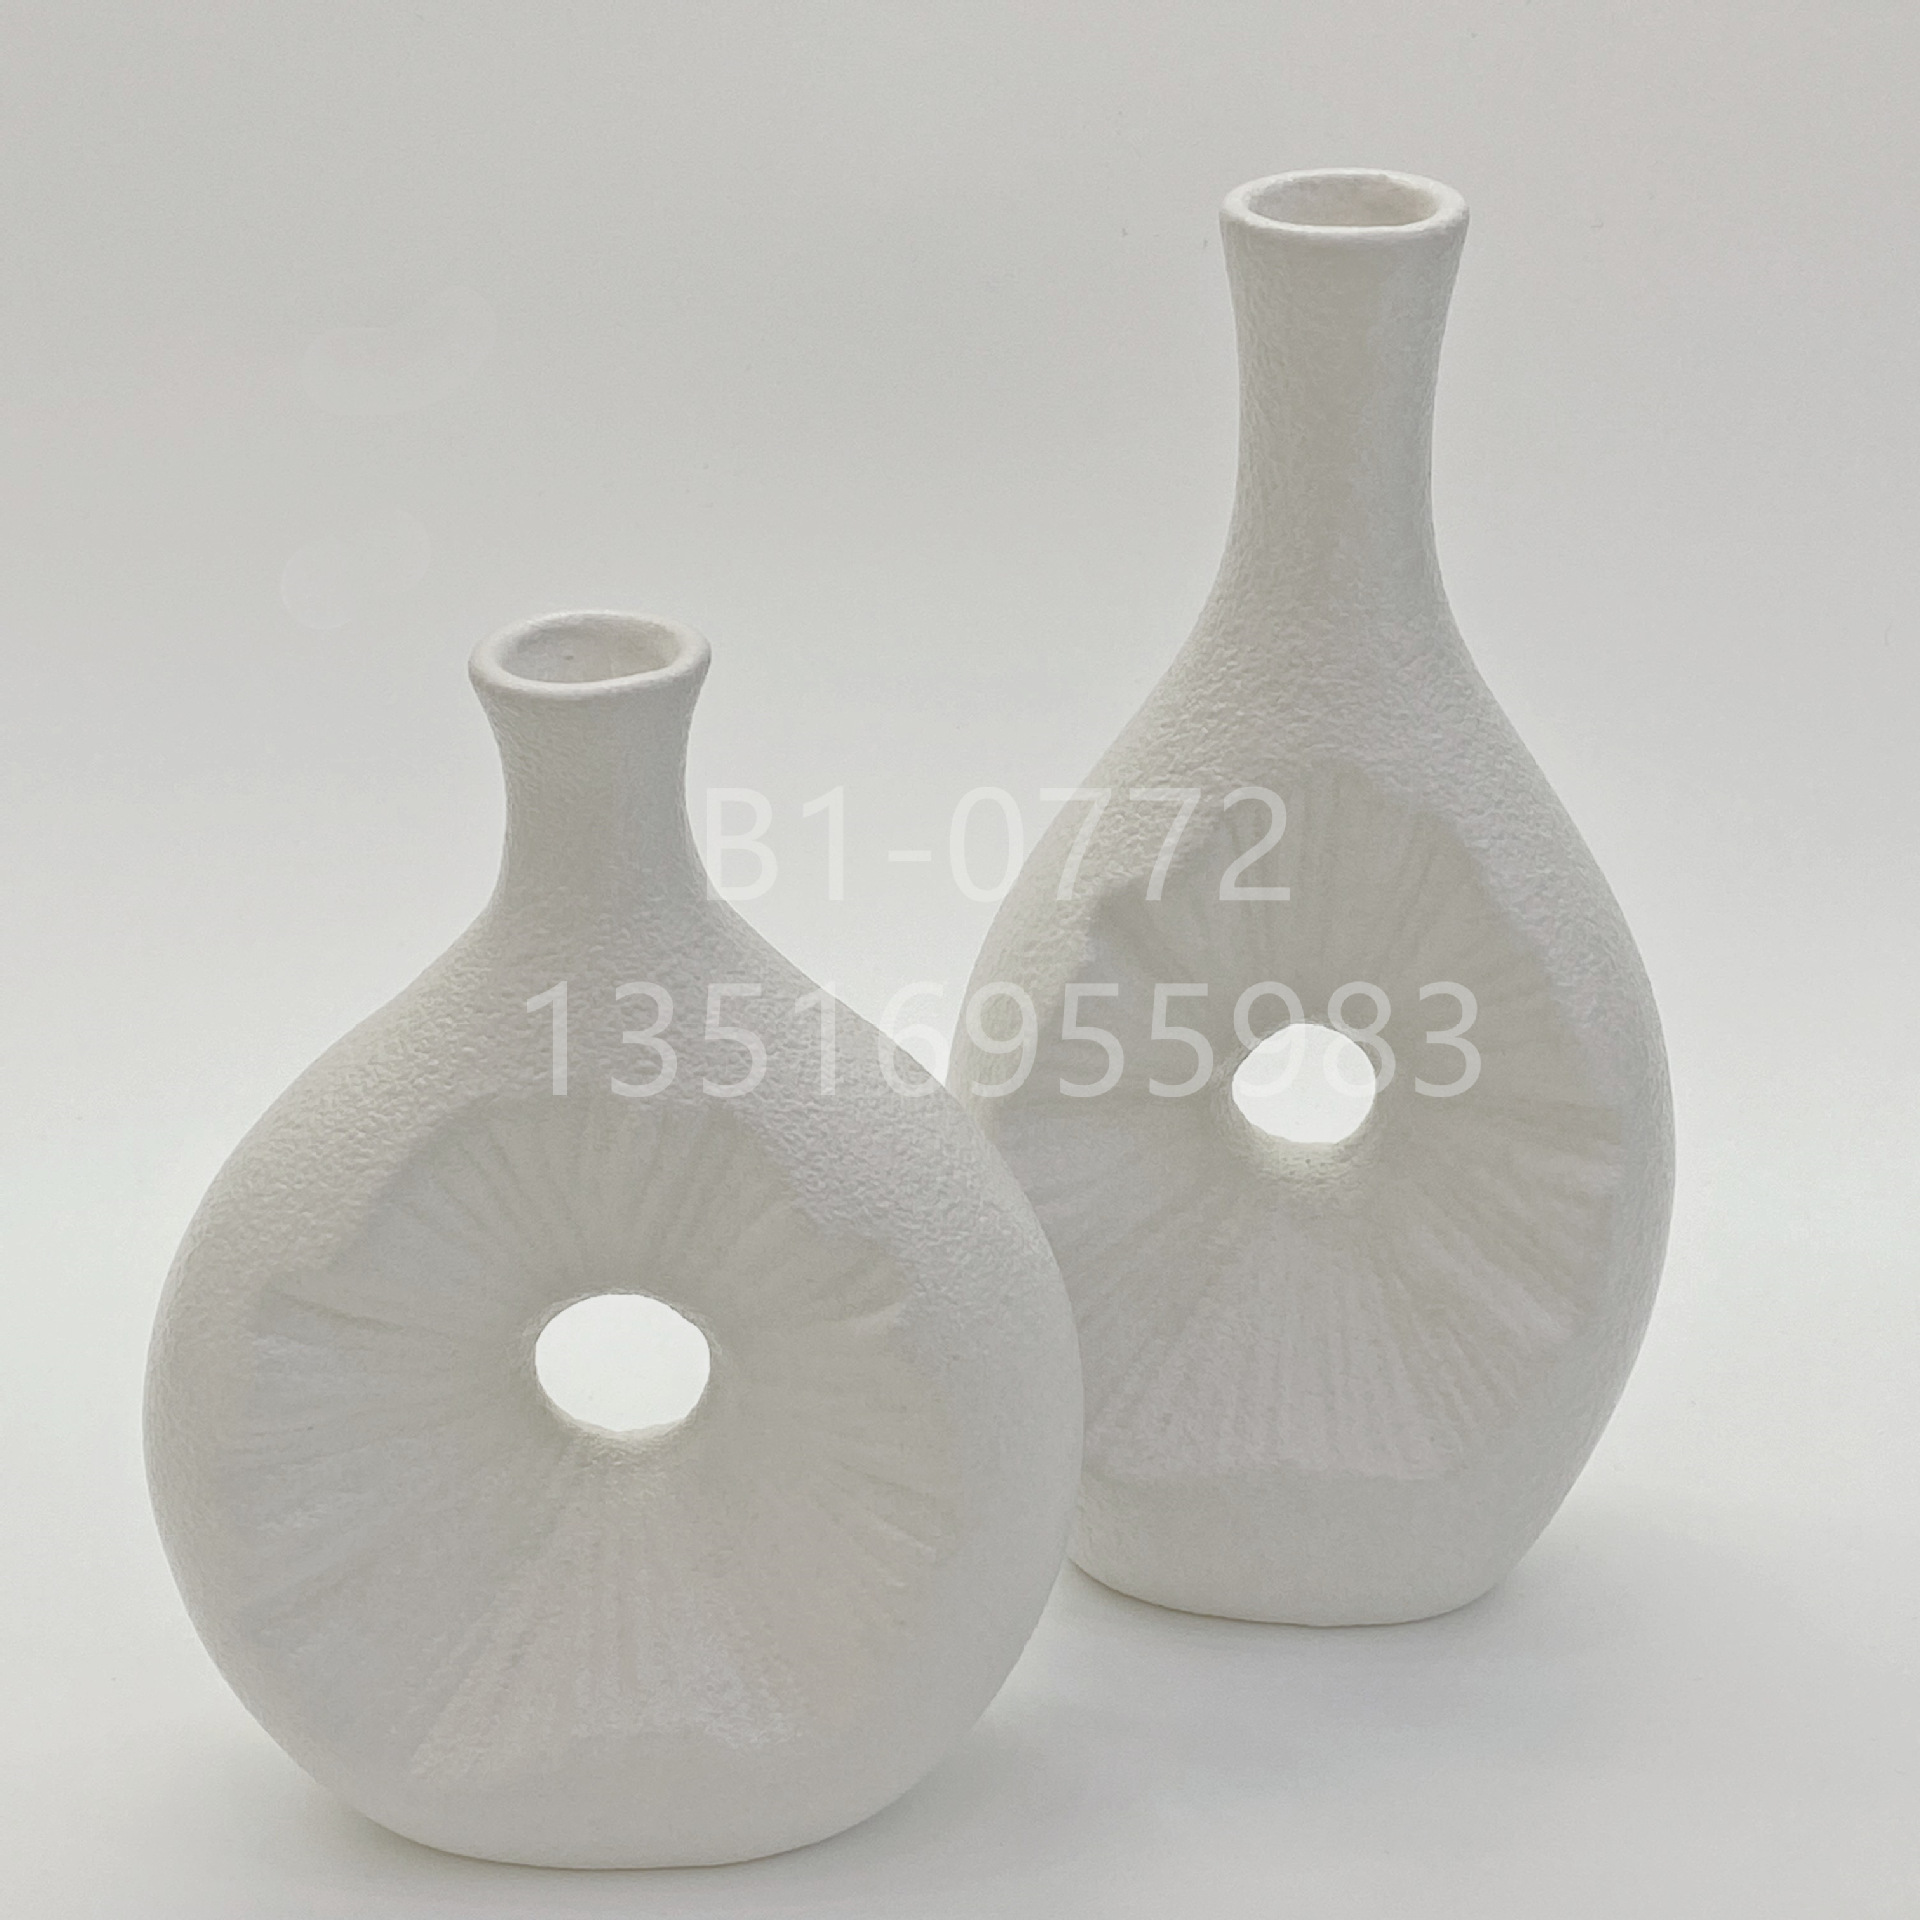 简约北欧式陶瓷花瓶 ins风白色陶瓷花器现代插花民宿办公桌面摆件金堡花瓶